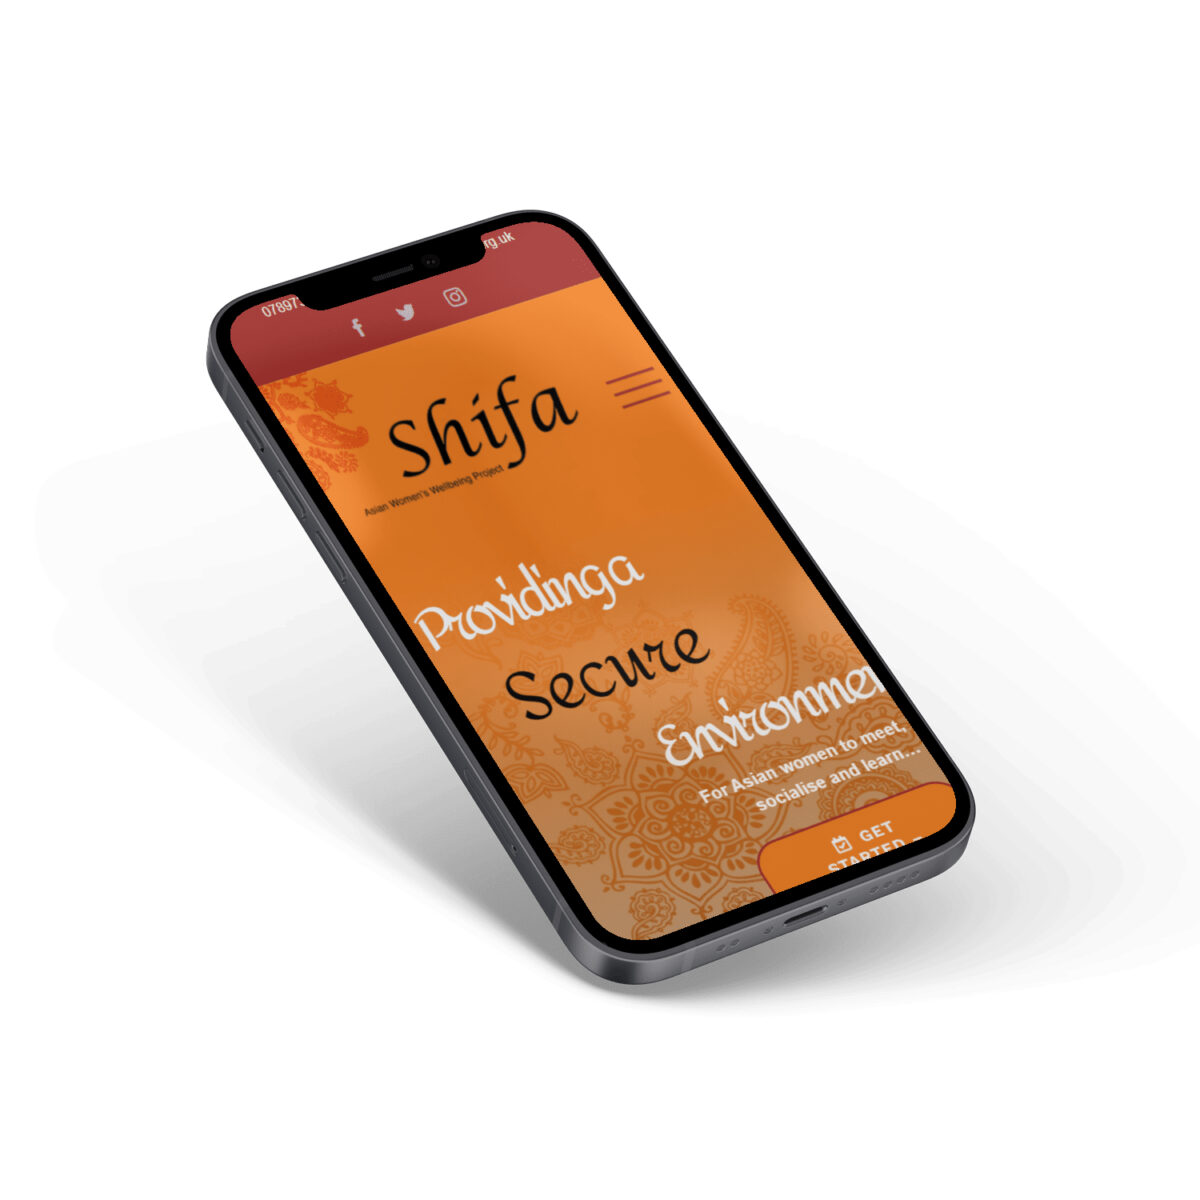 Shifa Network Mobile